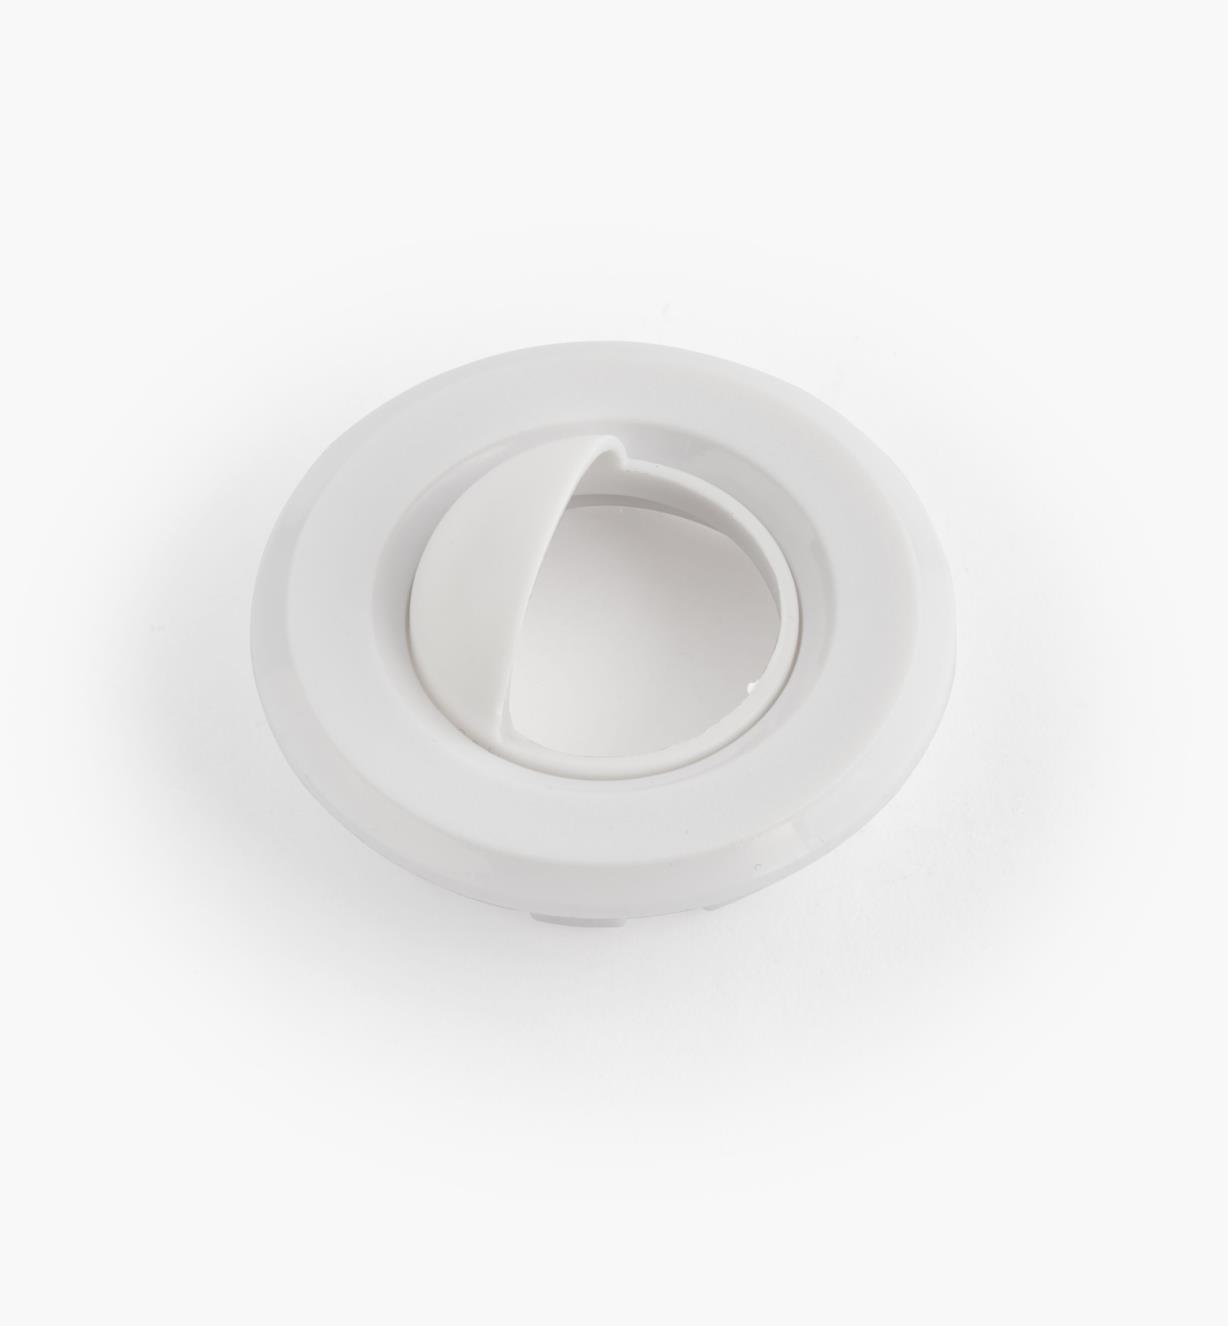 00U4355 - Garniture ronde de 1 1/2 po avec déflecteur, polycarbonate, blanc